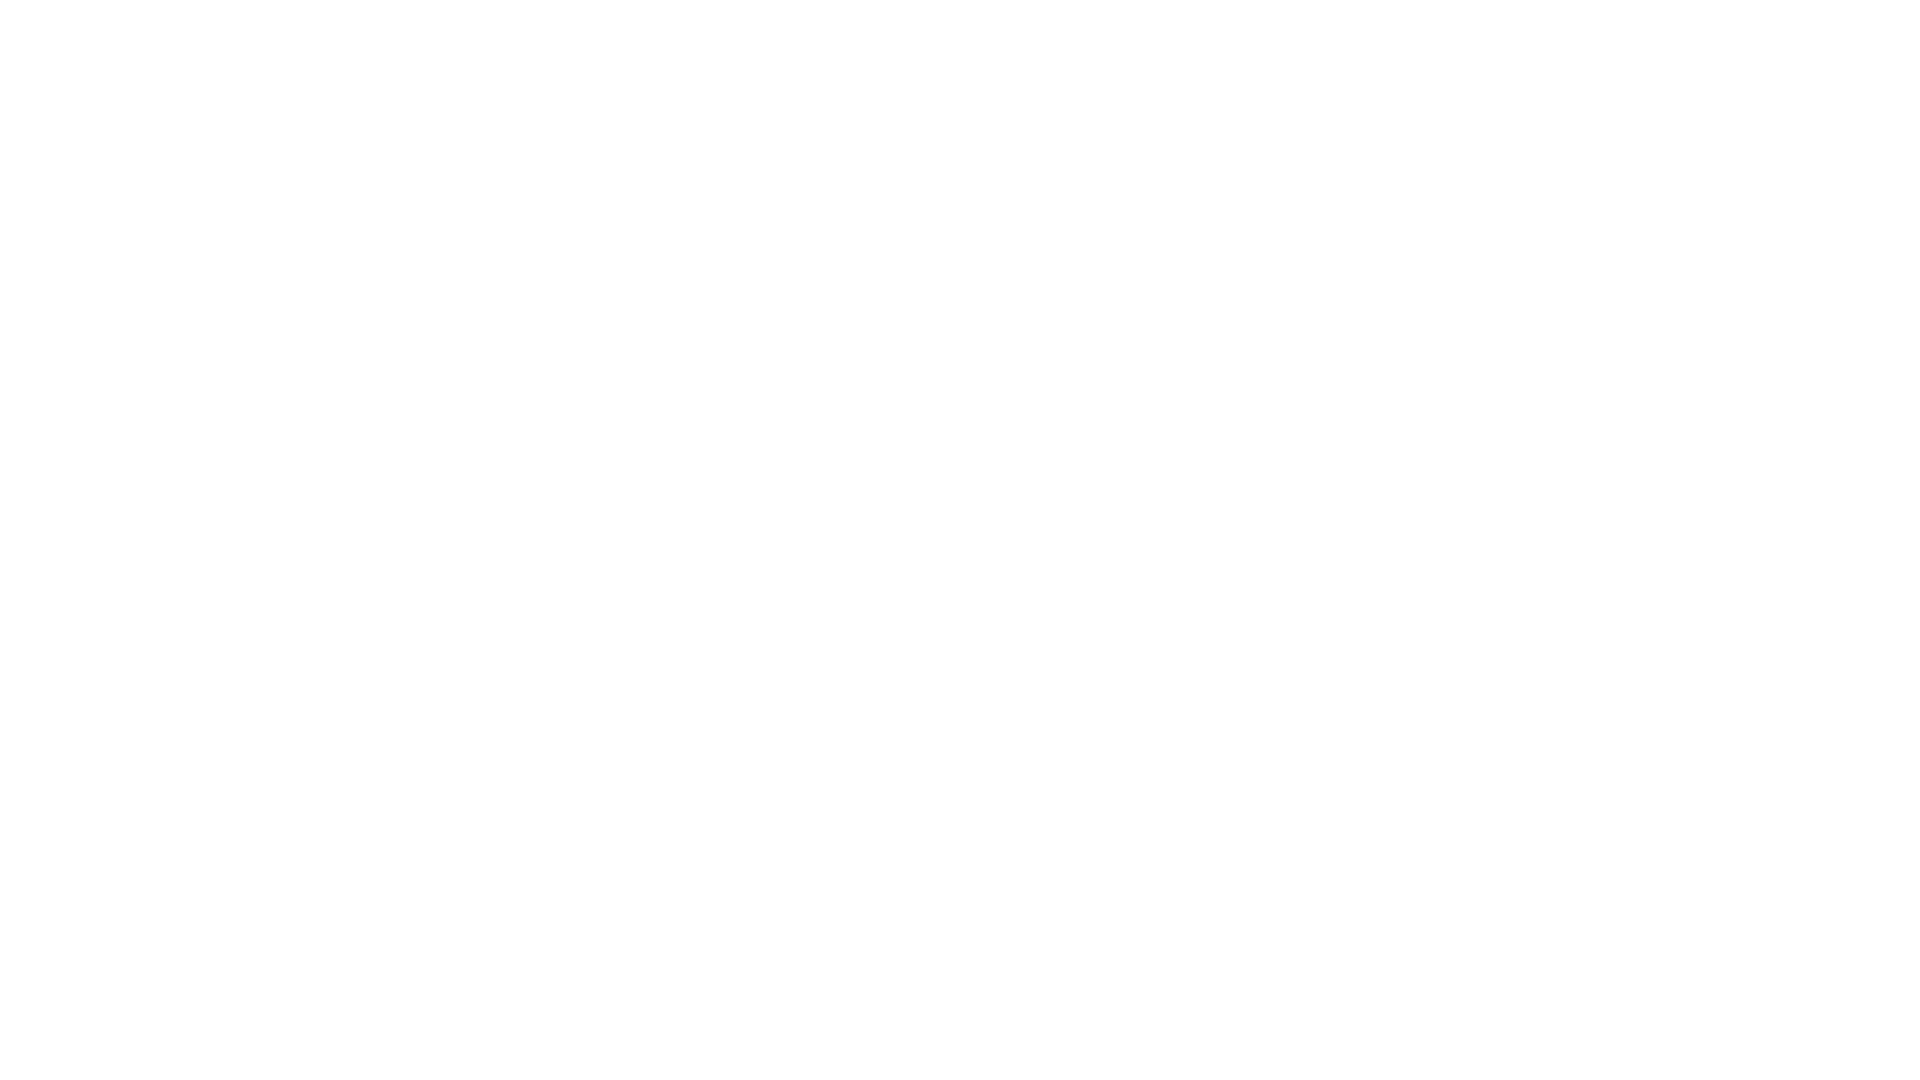 Saffron Kitchen - vendor logo